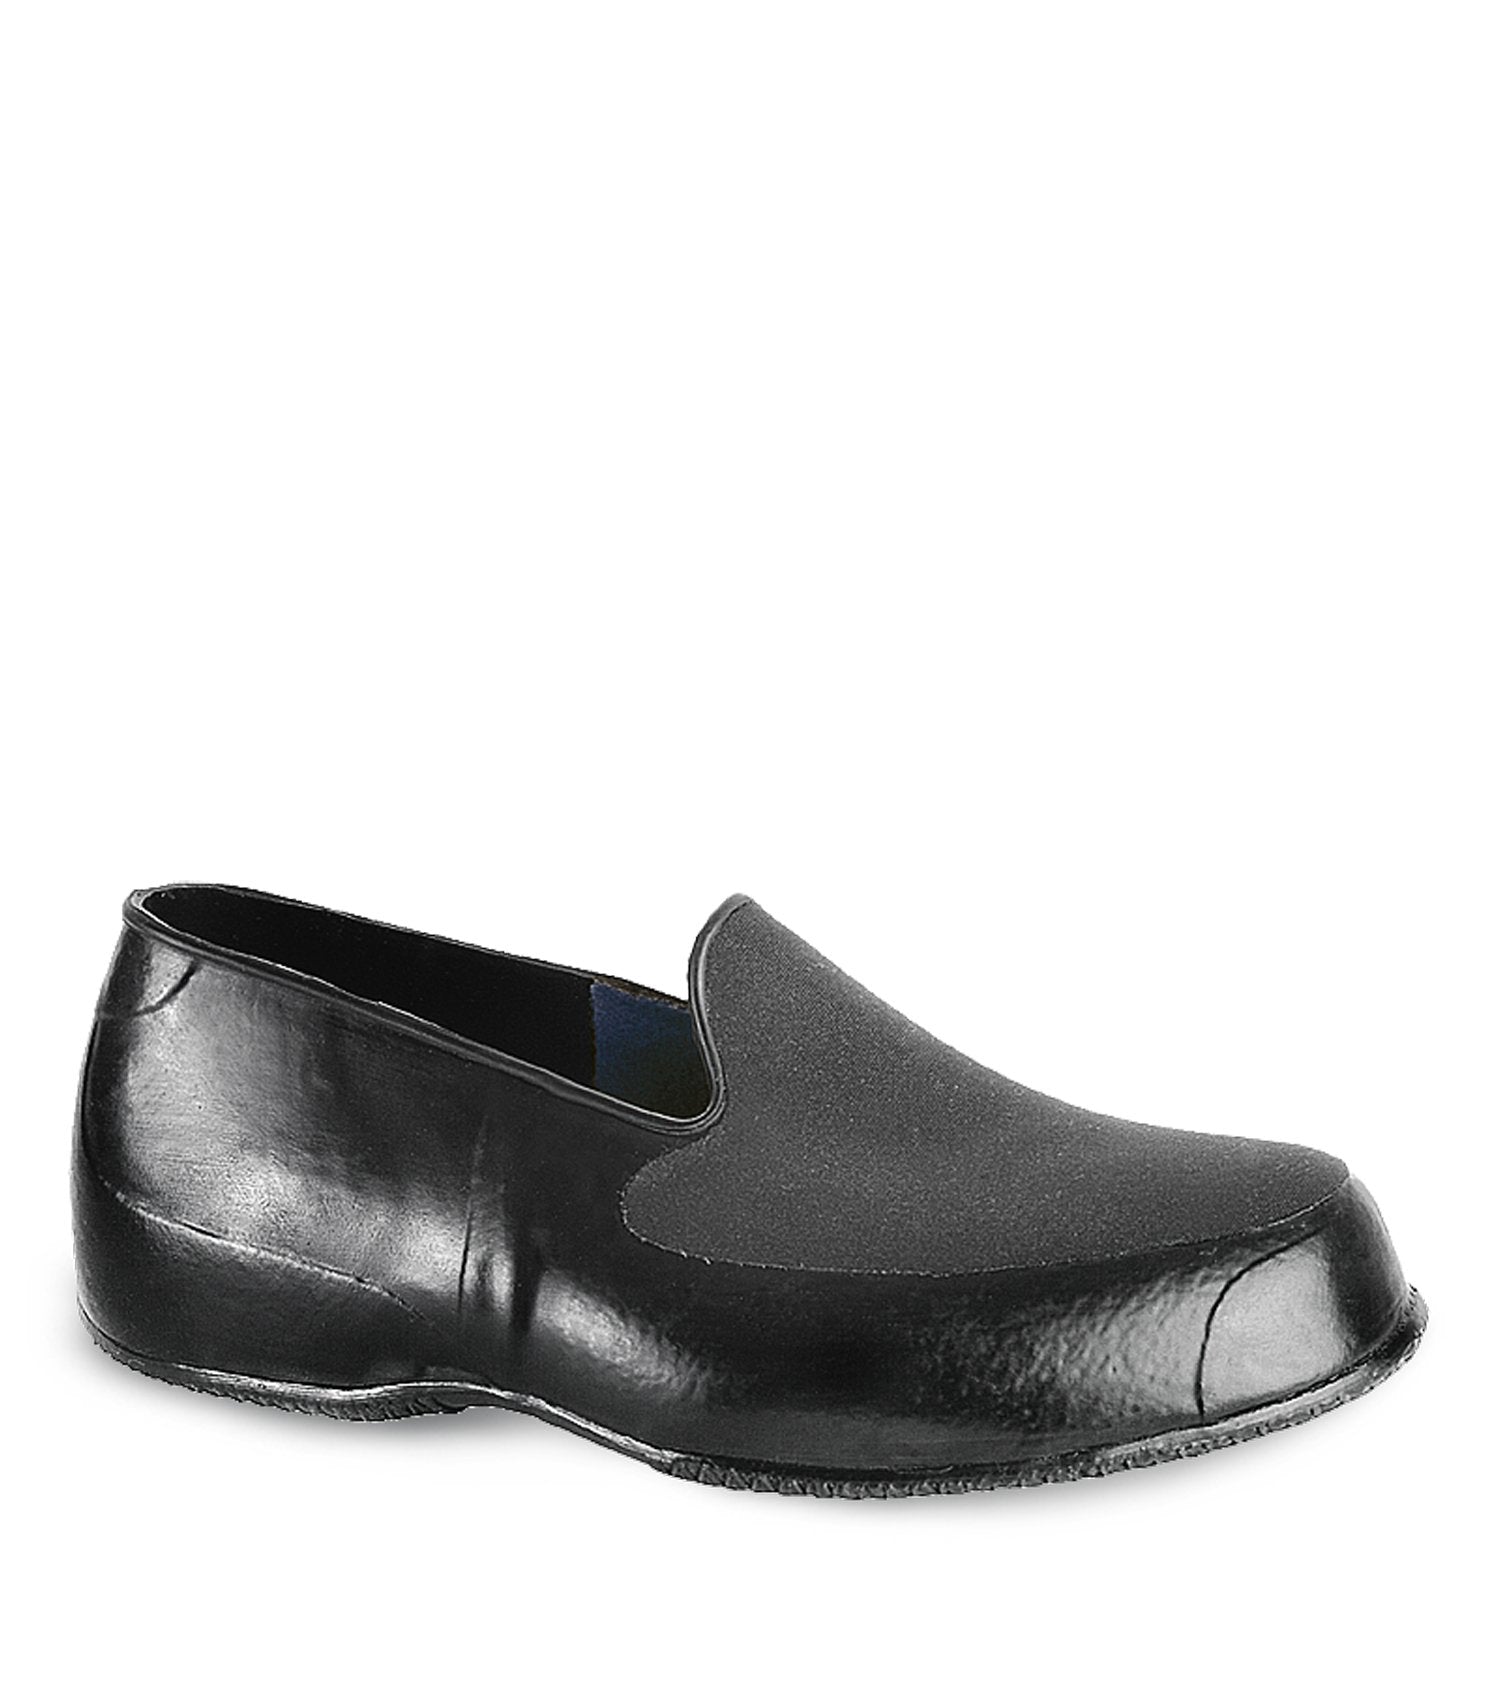 Acton Banker Waterproof Urban Overshoes | Reinforced Heel | Black | Sizes 5 - 15 Work Boots - Cleanflow